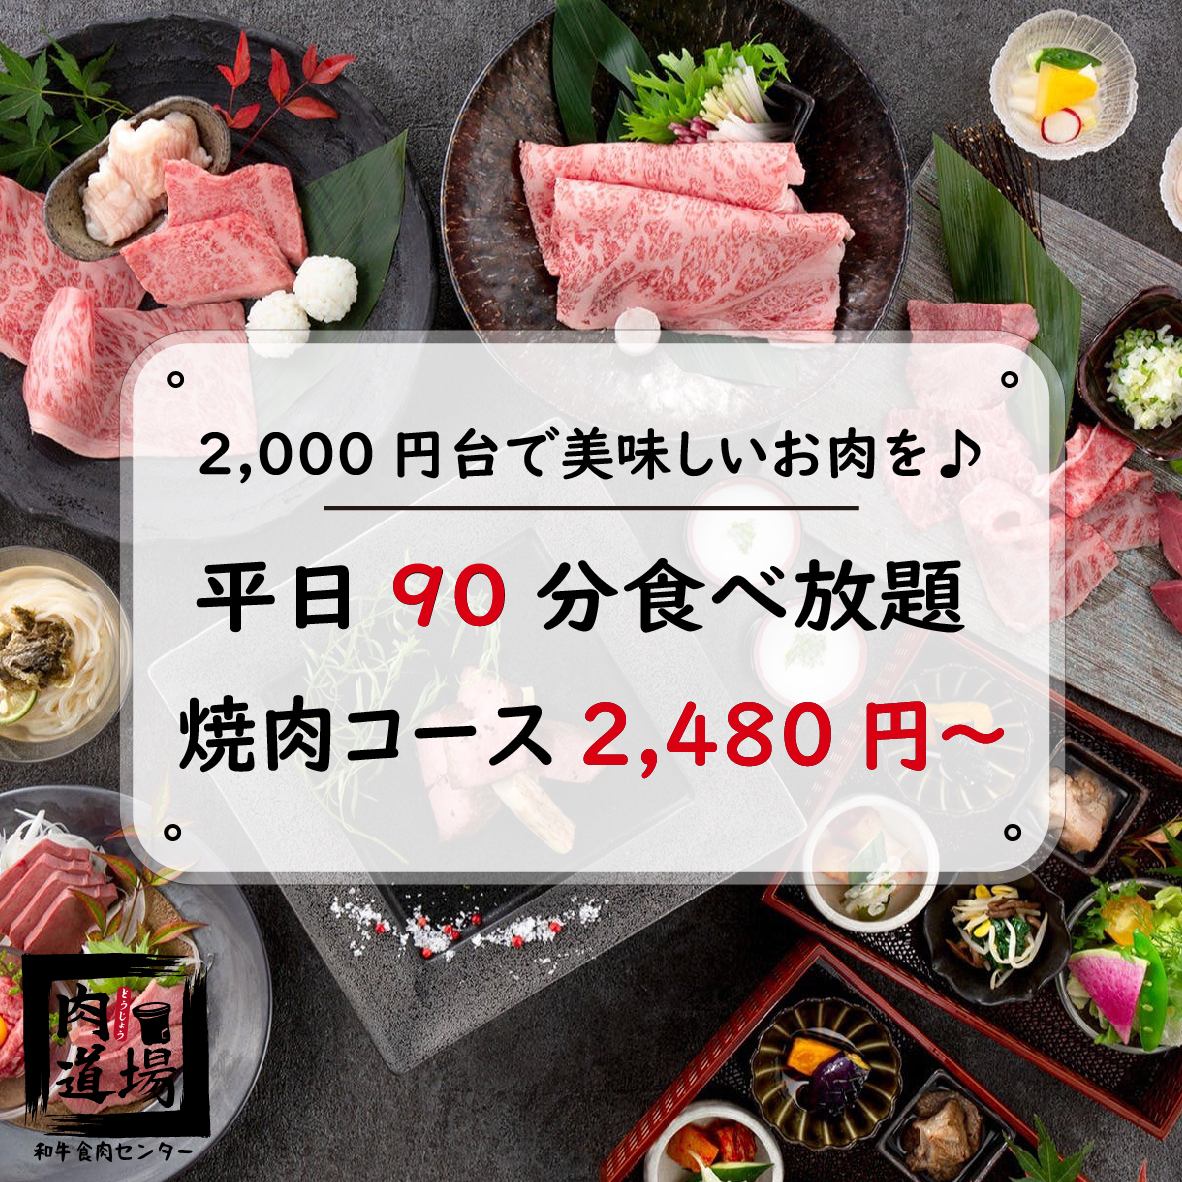 从大宫站步行3分钟★无限量供应的烤肉套餐价格为2480日元起♪